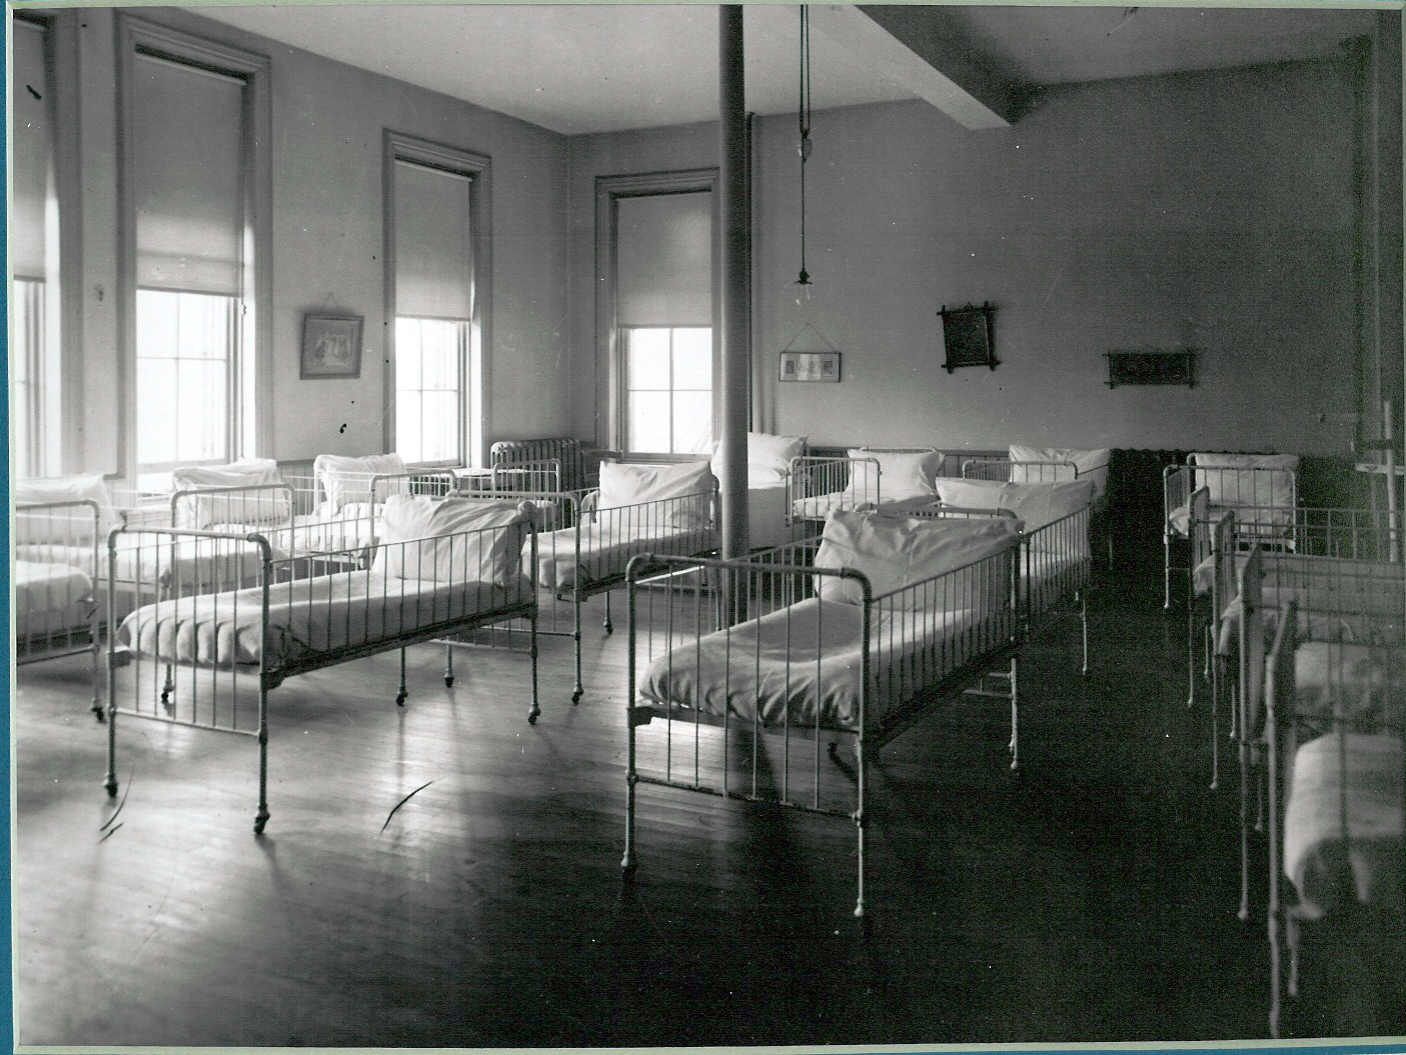 Children's Village beds circa 1918